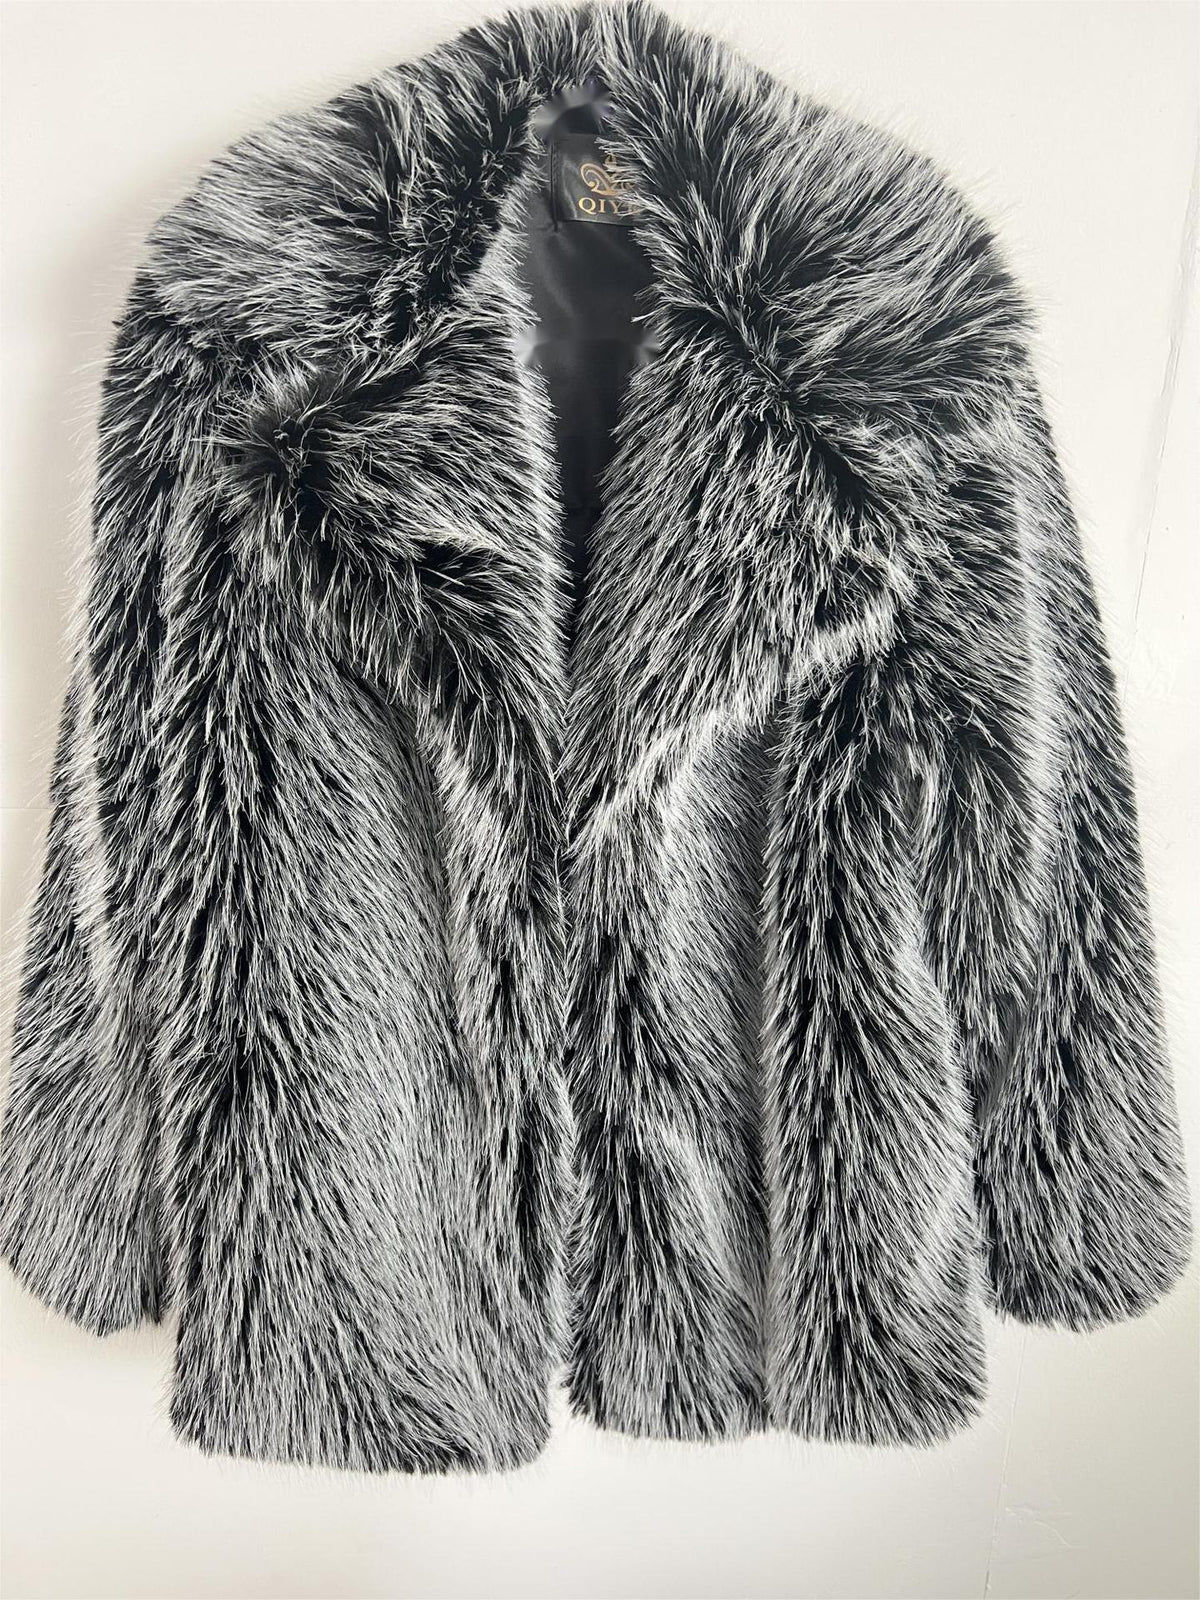 Brigitte Fur Coat